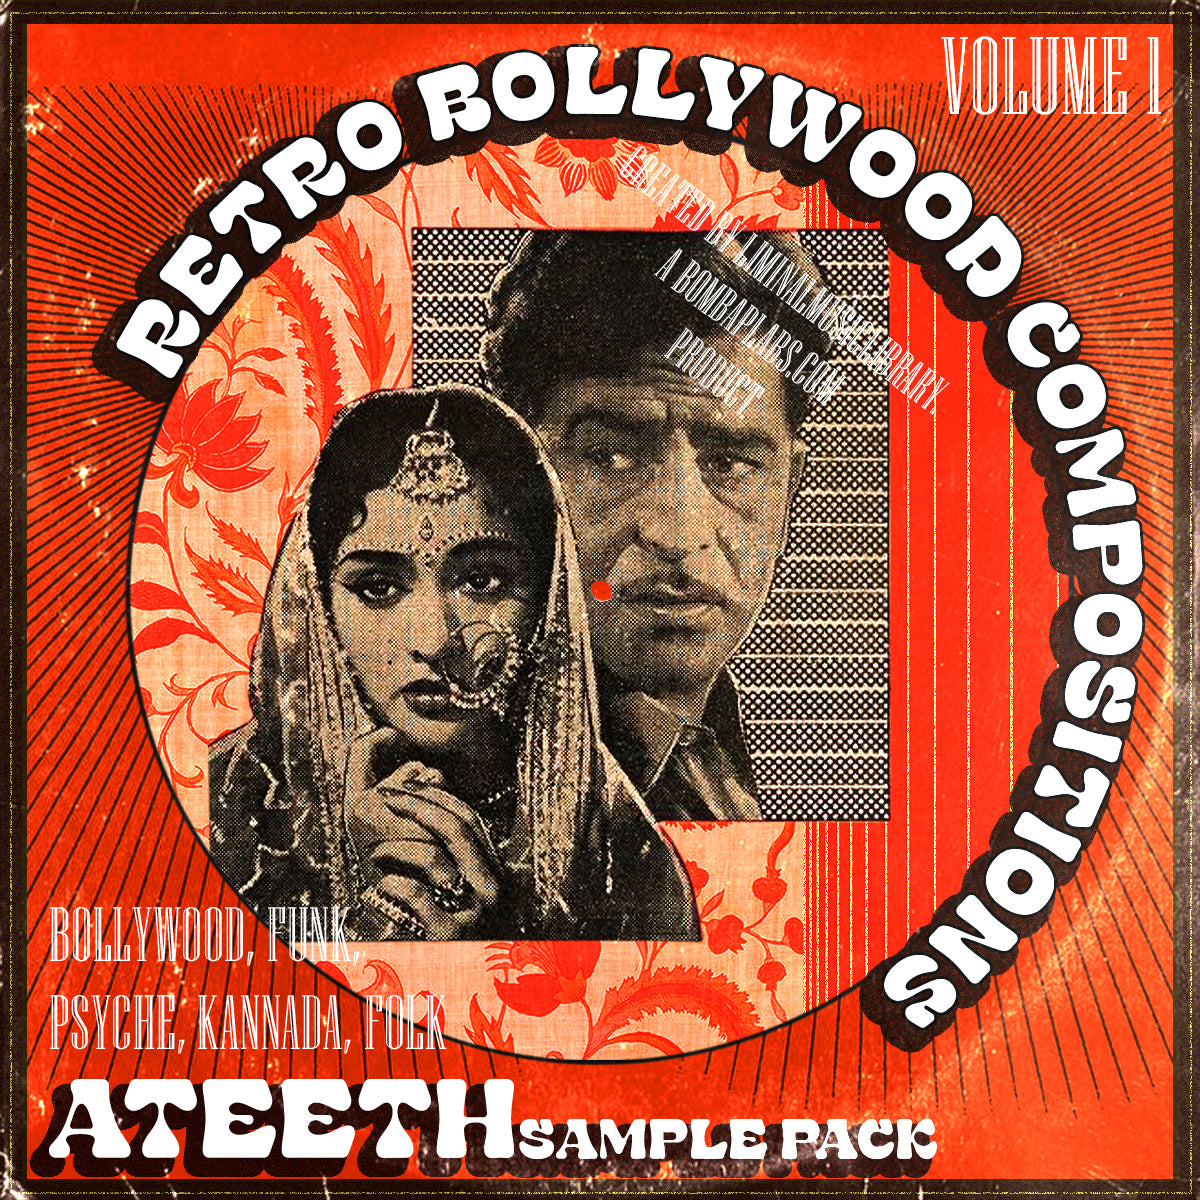 Ateeth Original Bollywood Vol 1